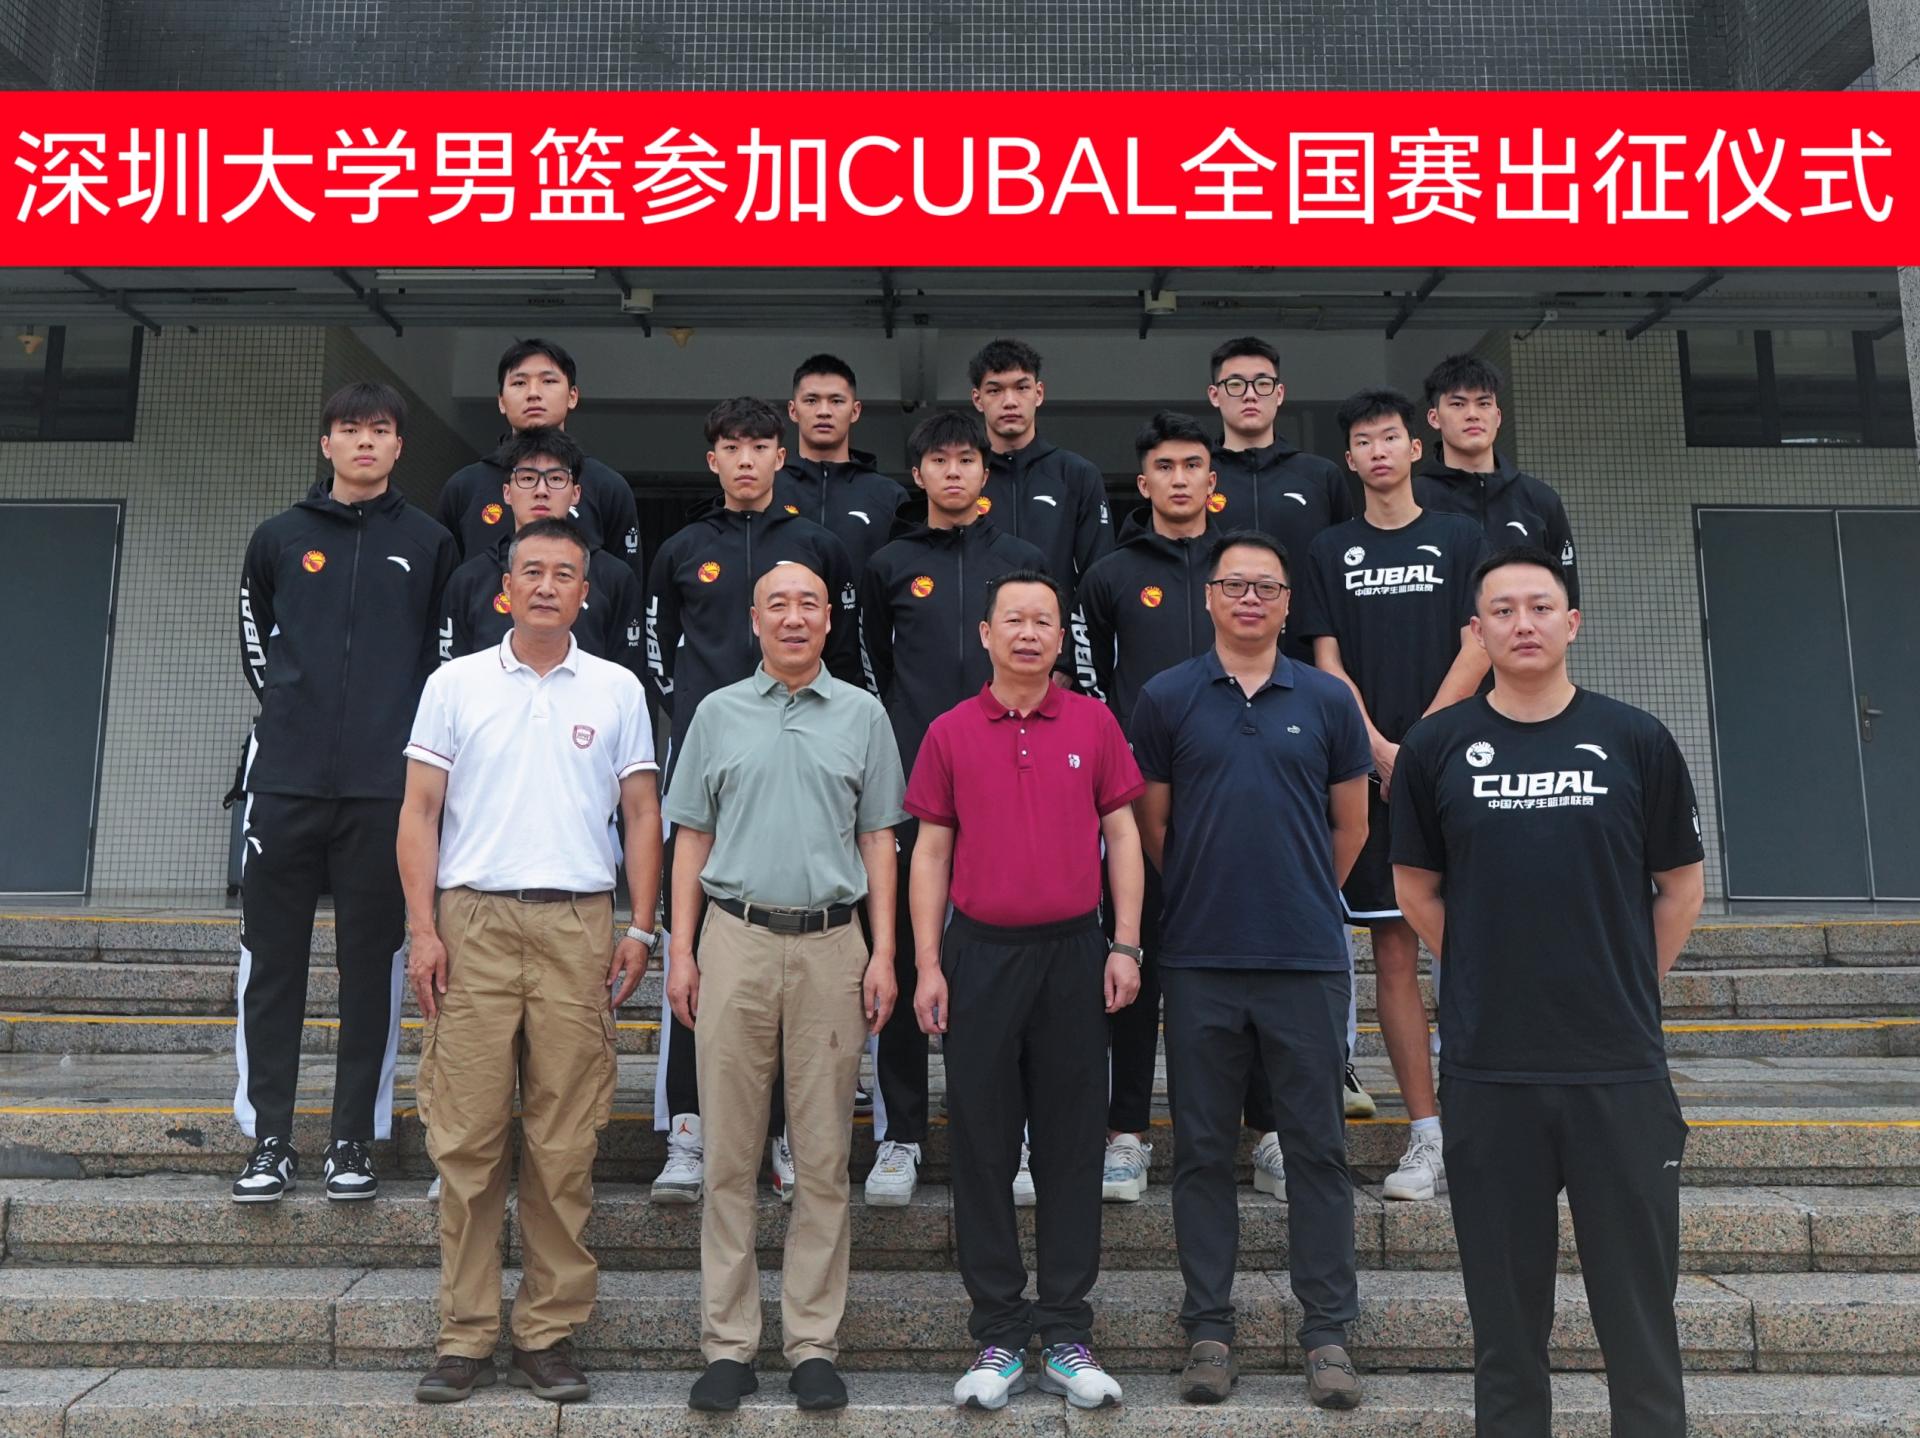 深圳大学男篮举行cubal全国赛出征仪式